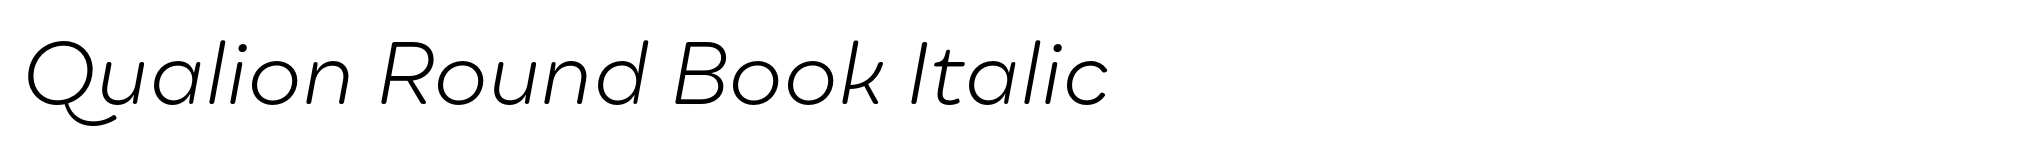 Qualion Round Book Italic image